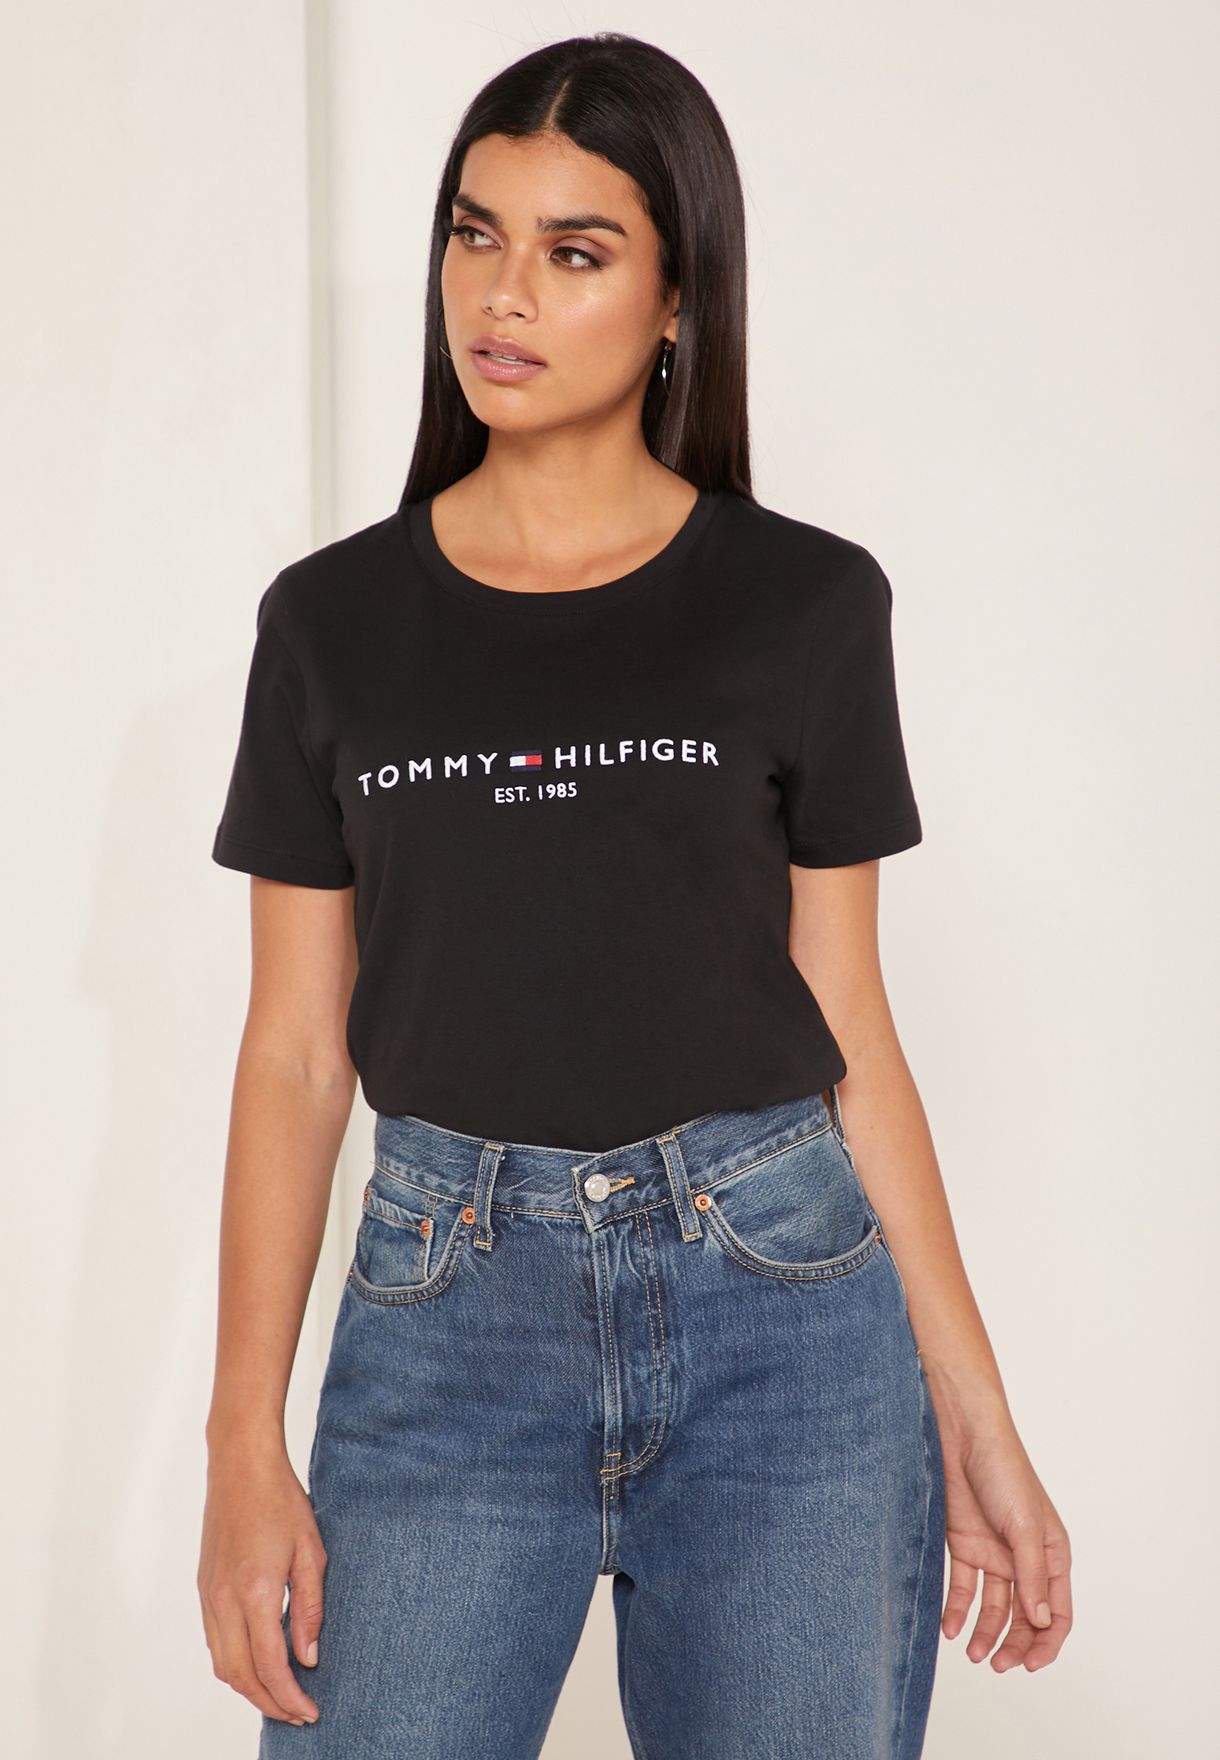 tommy hilfiger logo t shirt women